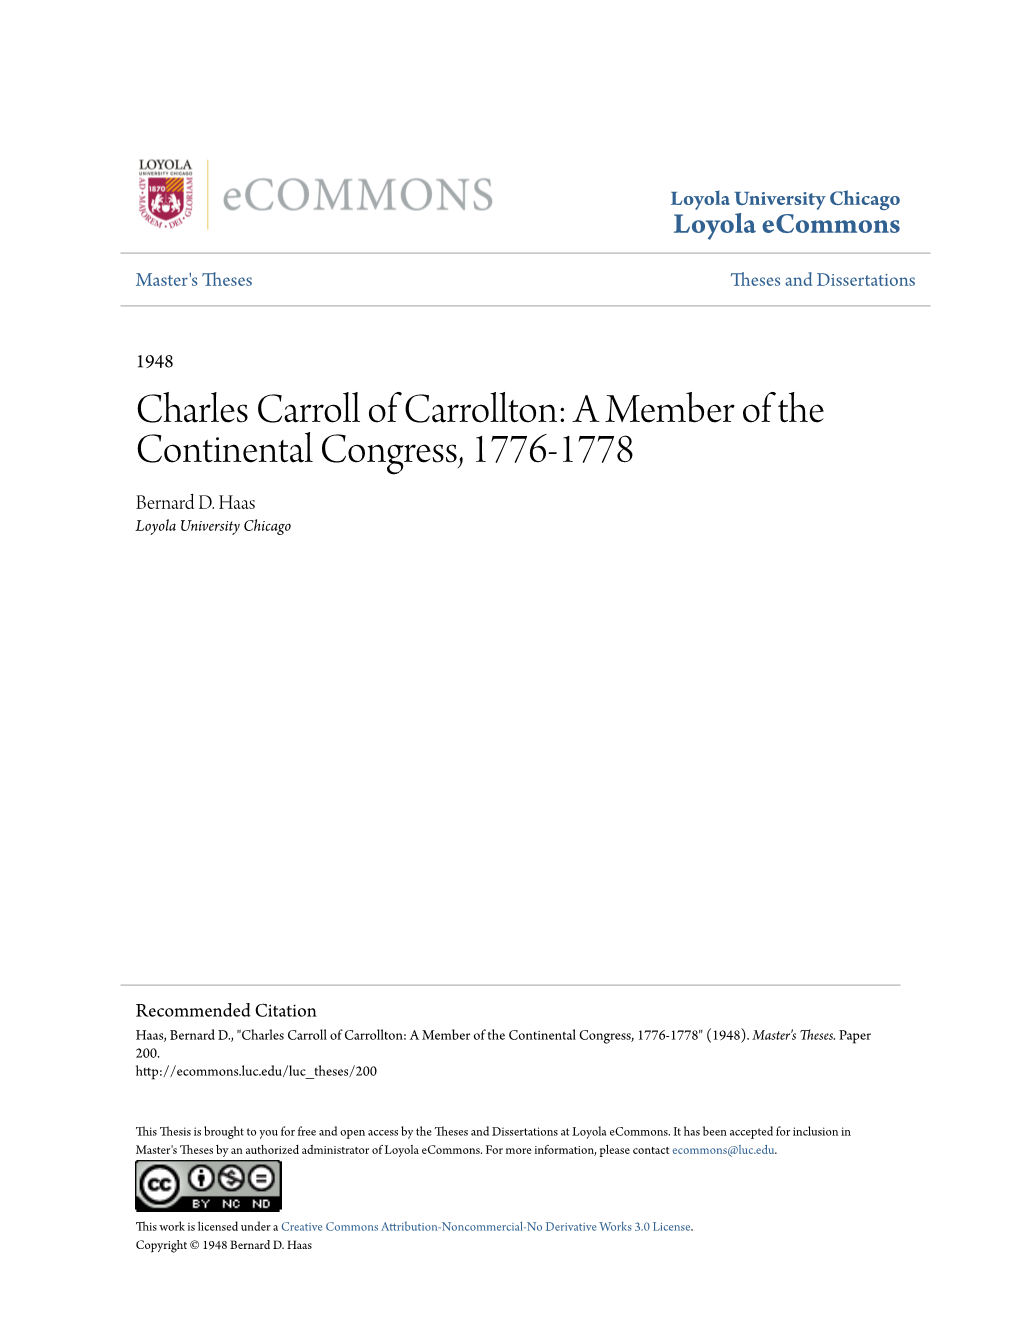 Charles Carroll of Carrollton: a Member of the Continental Congress, 1776-1778 Bernard D